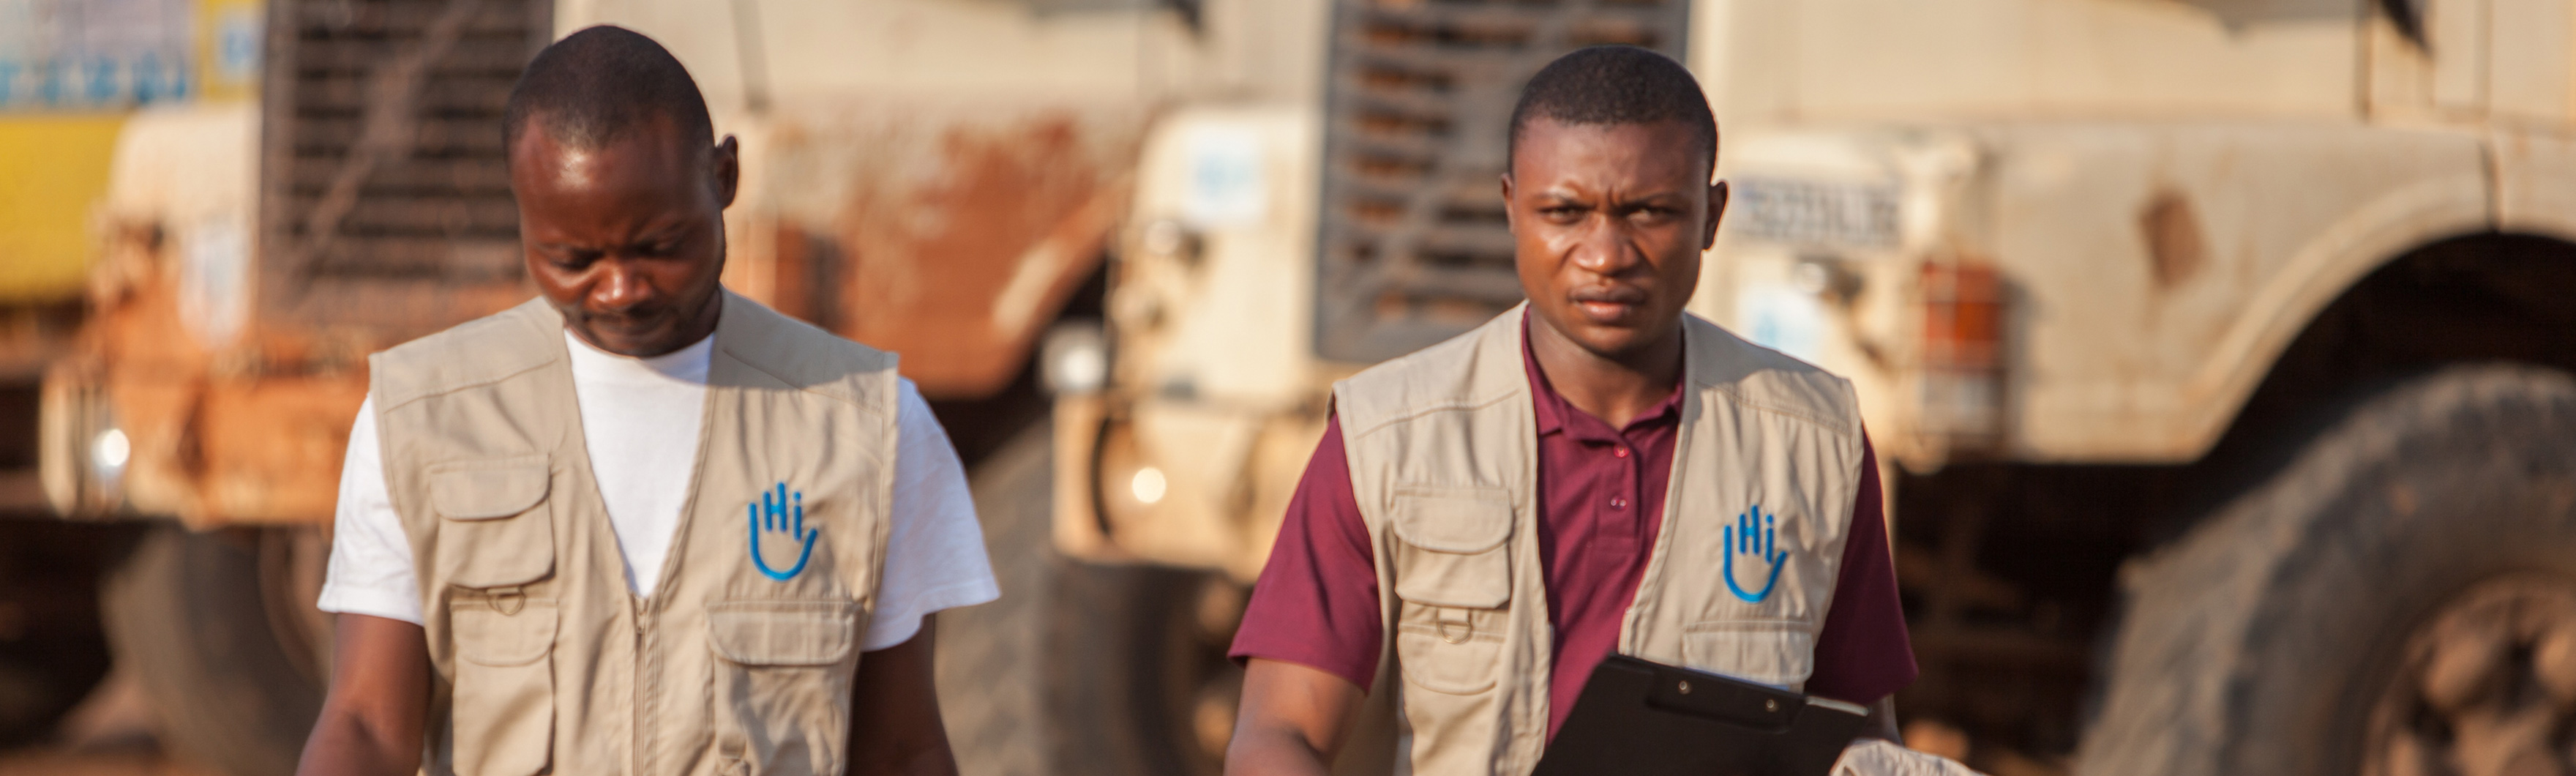 DRC, Edouard and Sylvain of the HI logistics platform project set up in response to the Kasai humanitarian crisis.